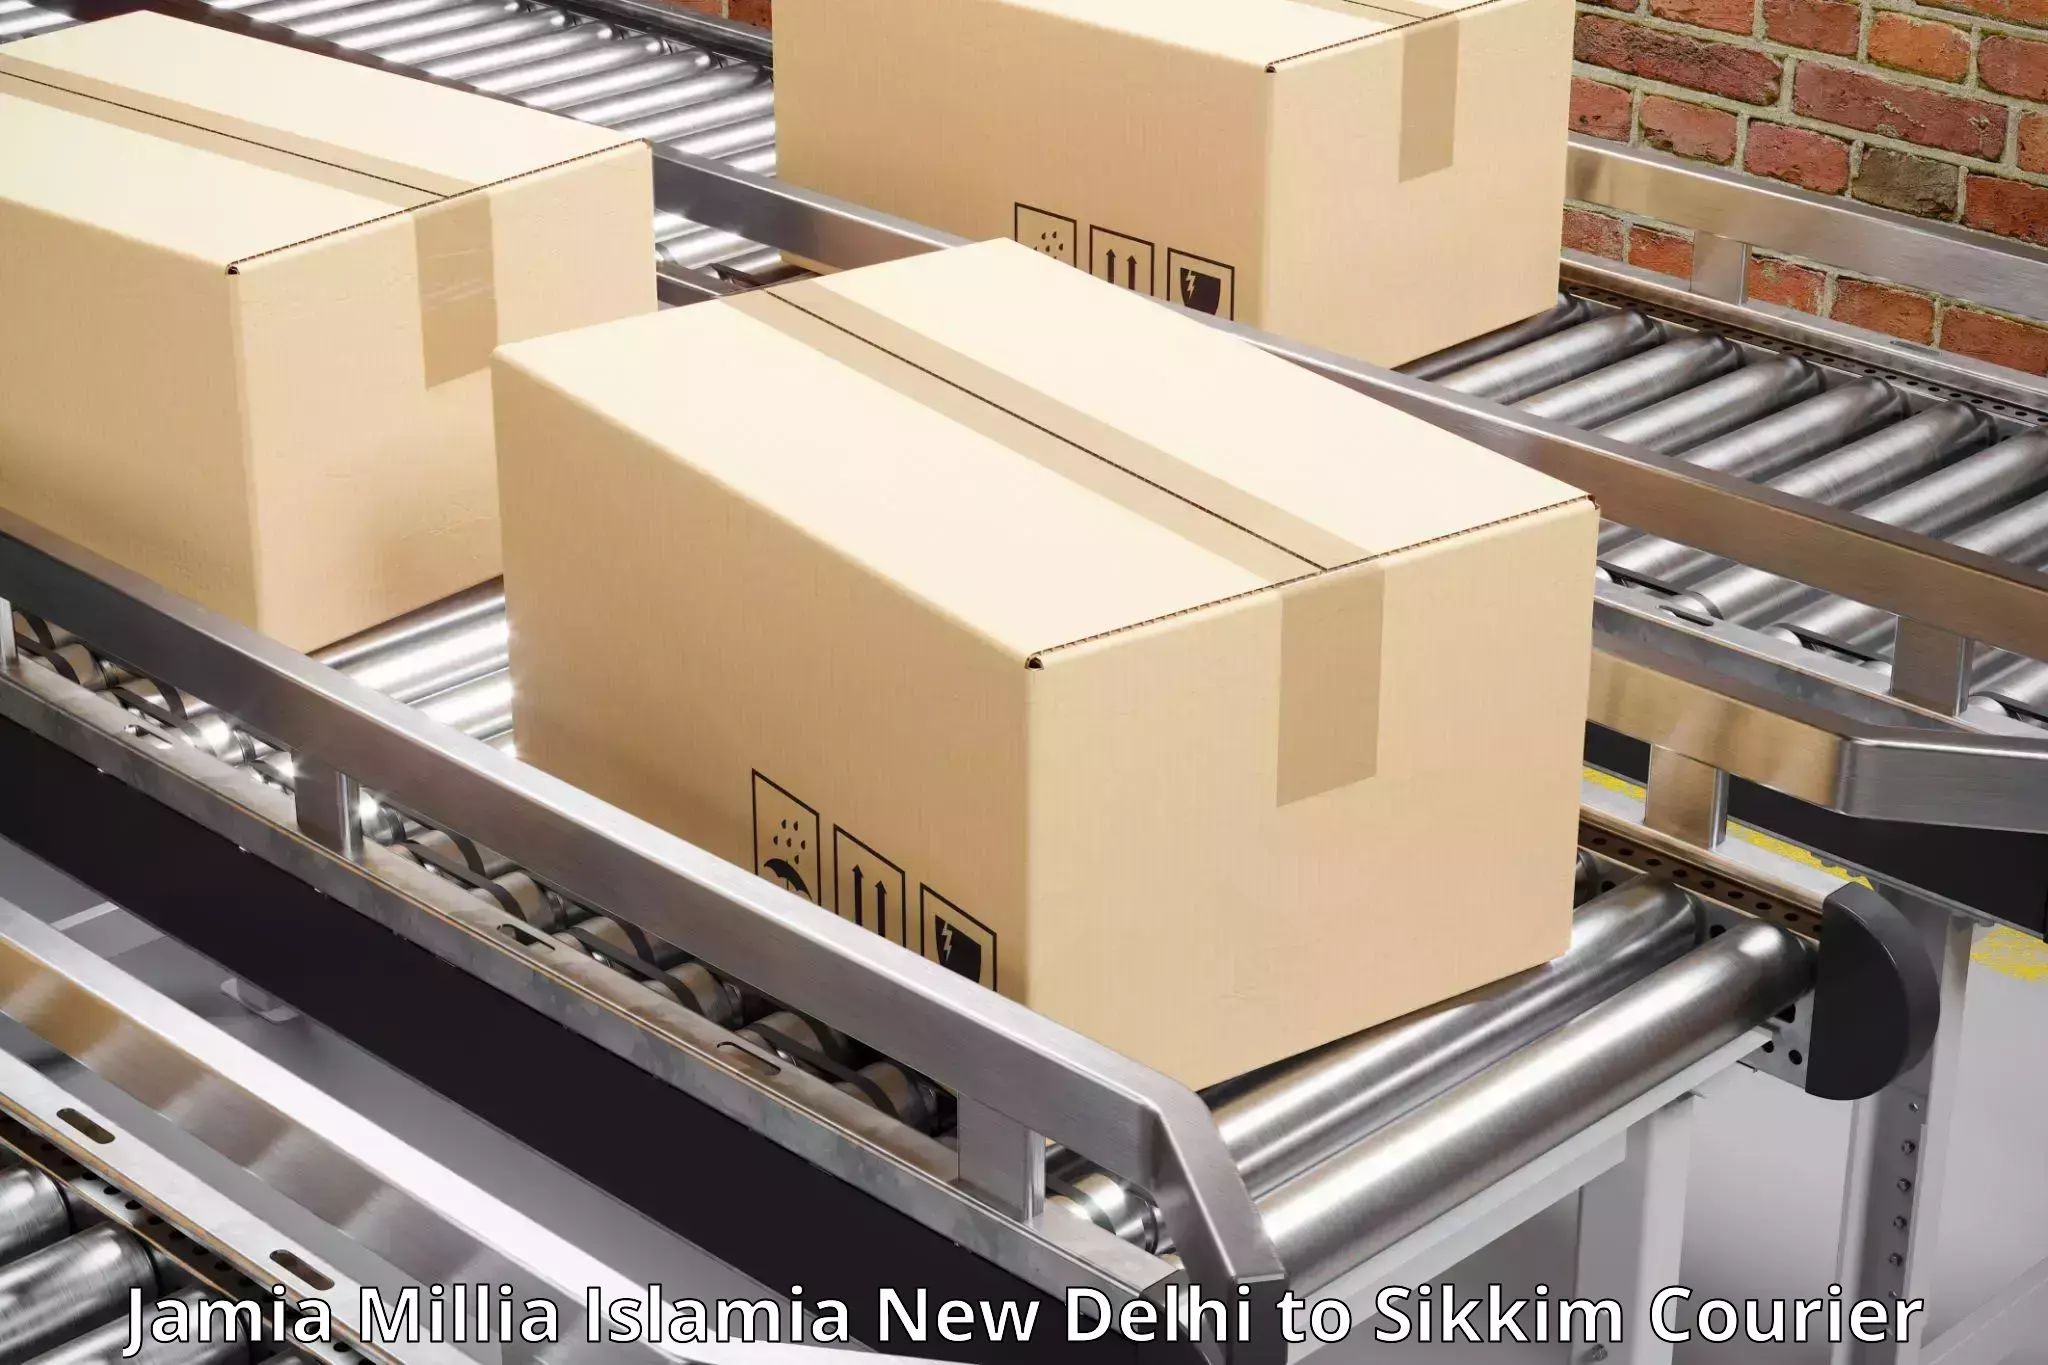 Flexible parcel services Jamia Millia Islamia New Delhi to Sikkim